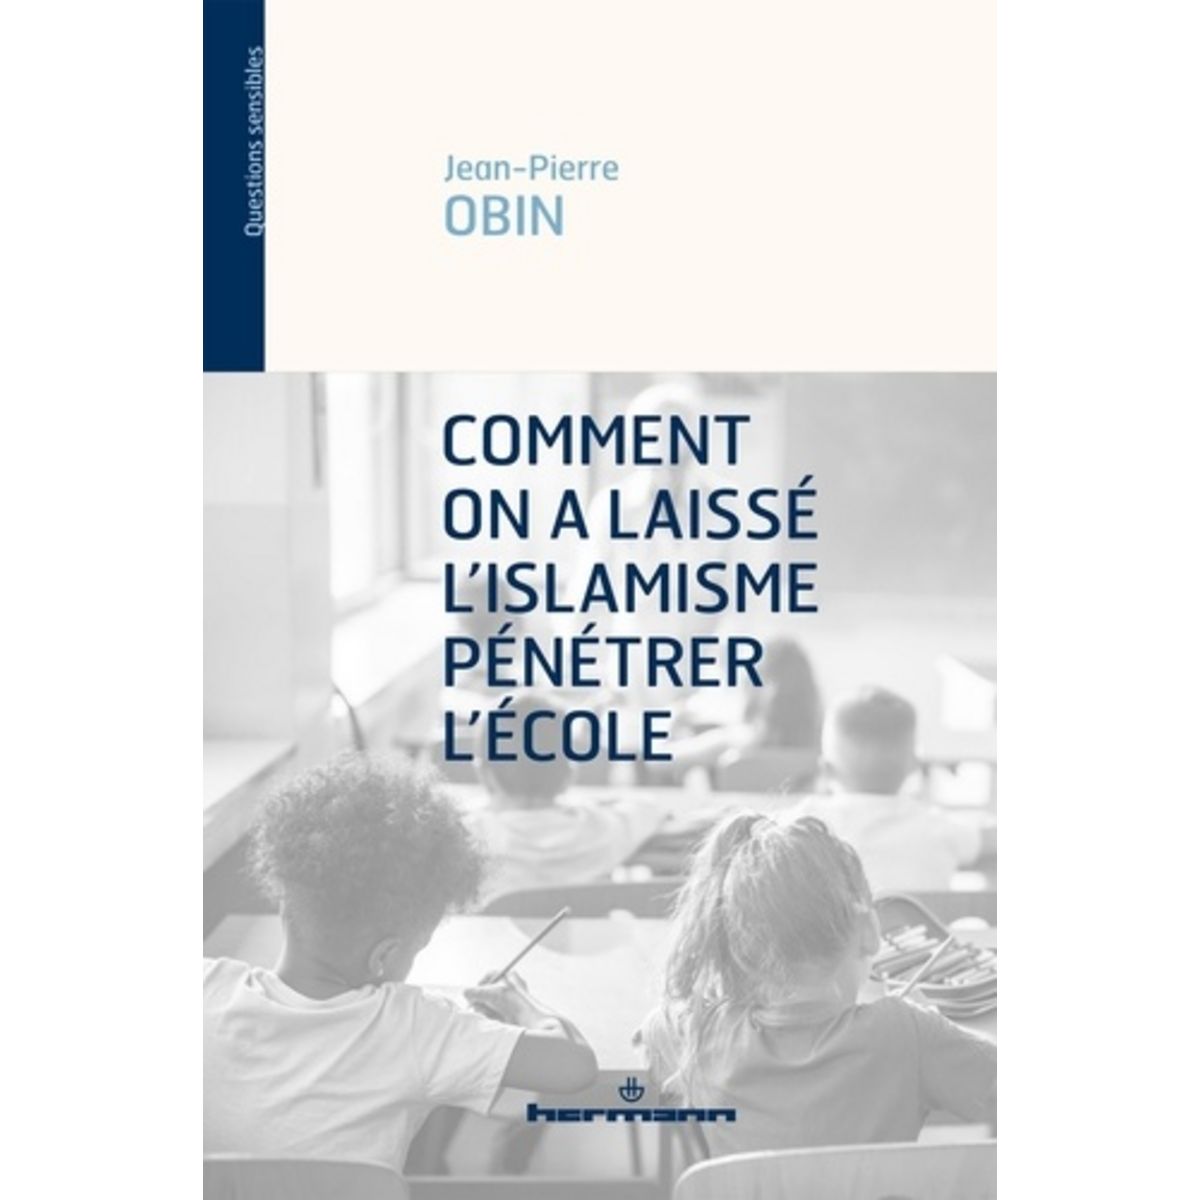  COMMENT ON A LAISSE L'ISLAMISME PENETRER L'ECOLE, Obin Jean-Pierre